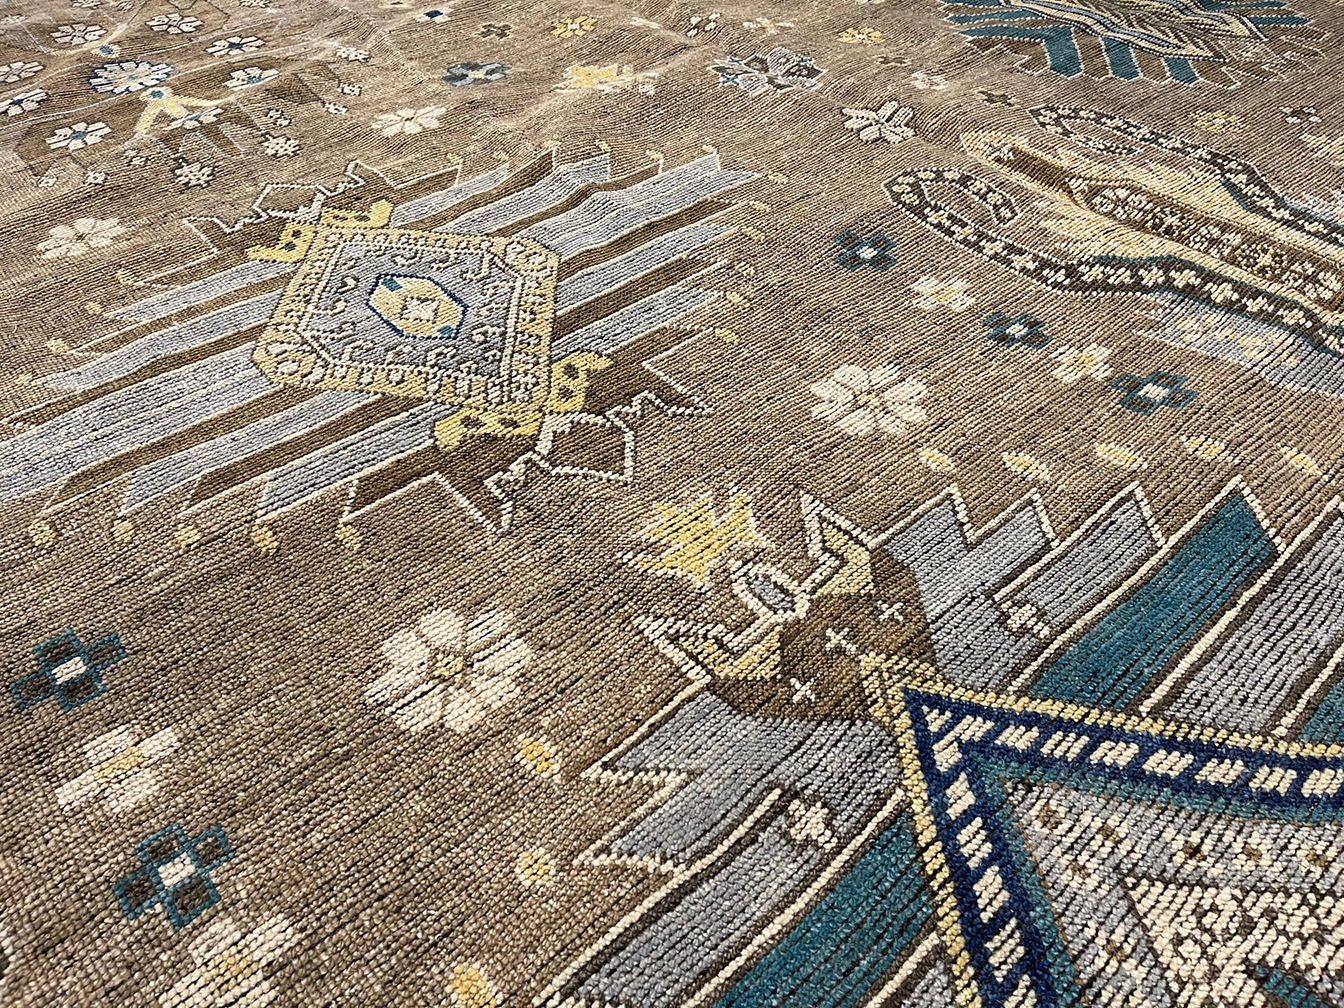 bakshaish Carpet - # 56779